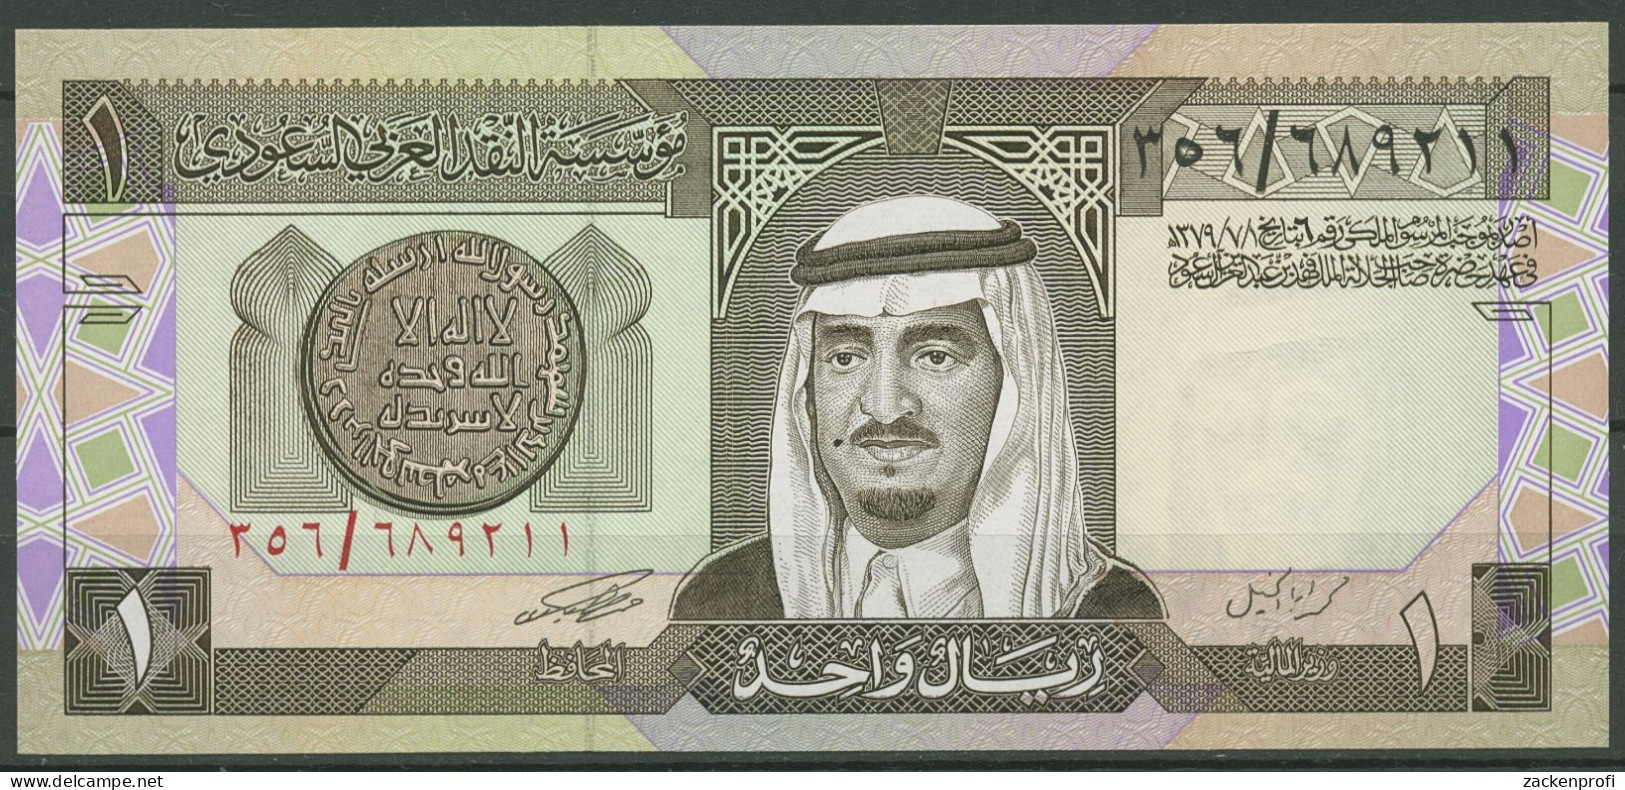 Saudi-Arabien 1 Riyal 1984, König Fahd, KM 21 Kassenfrisch (K616) - Saudi-Arabien